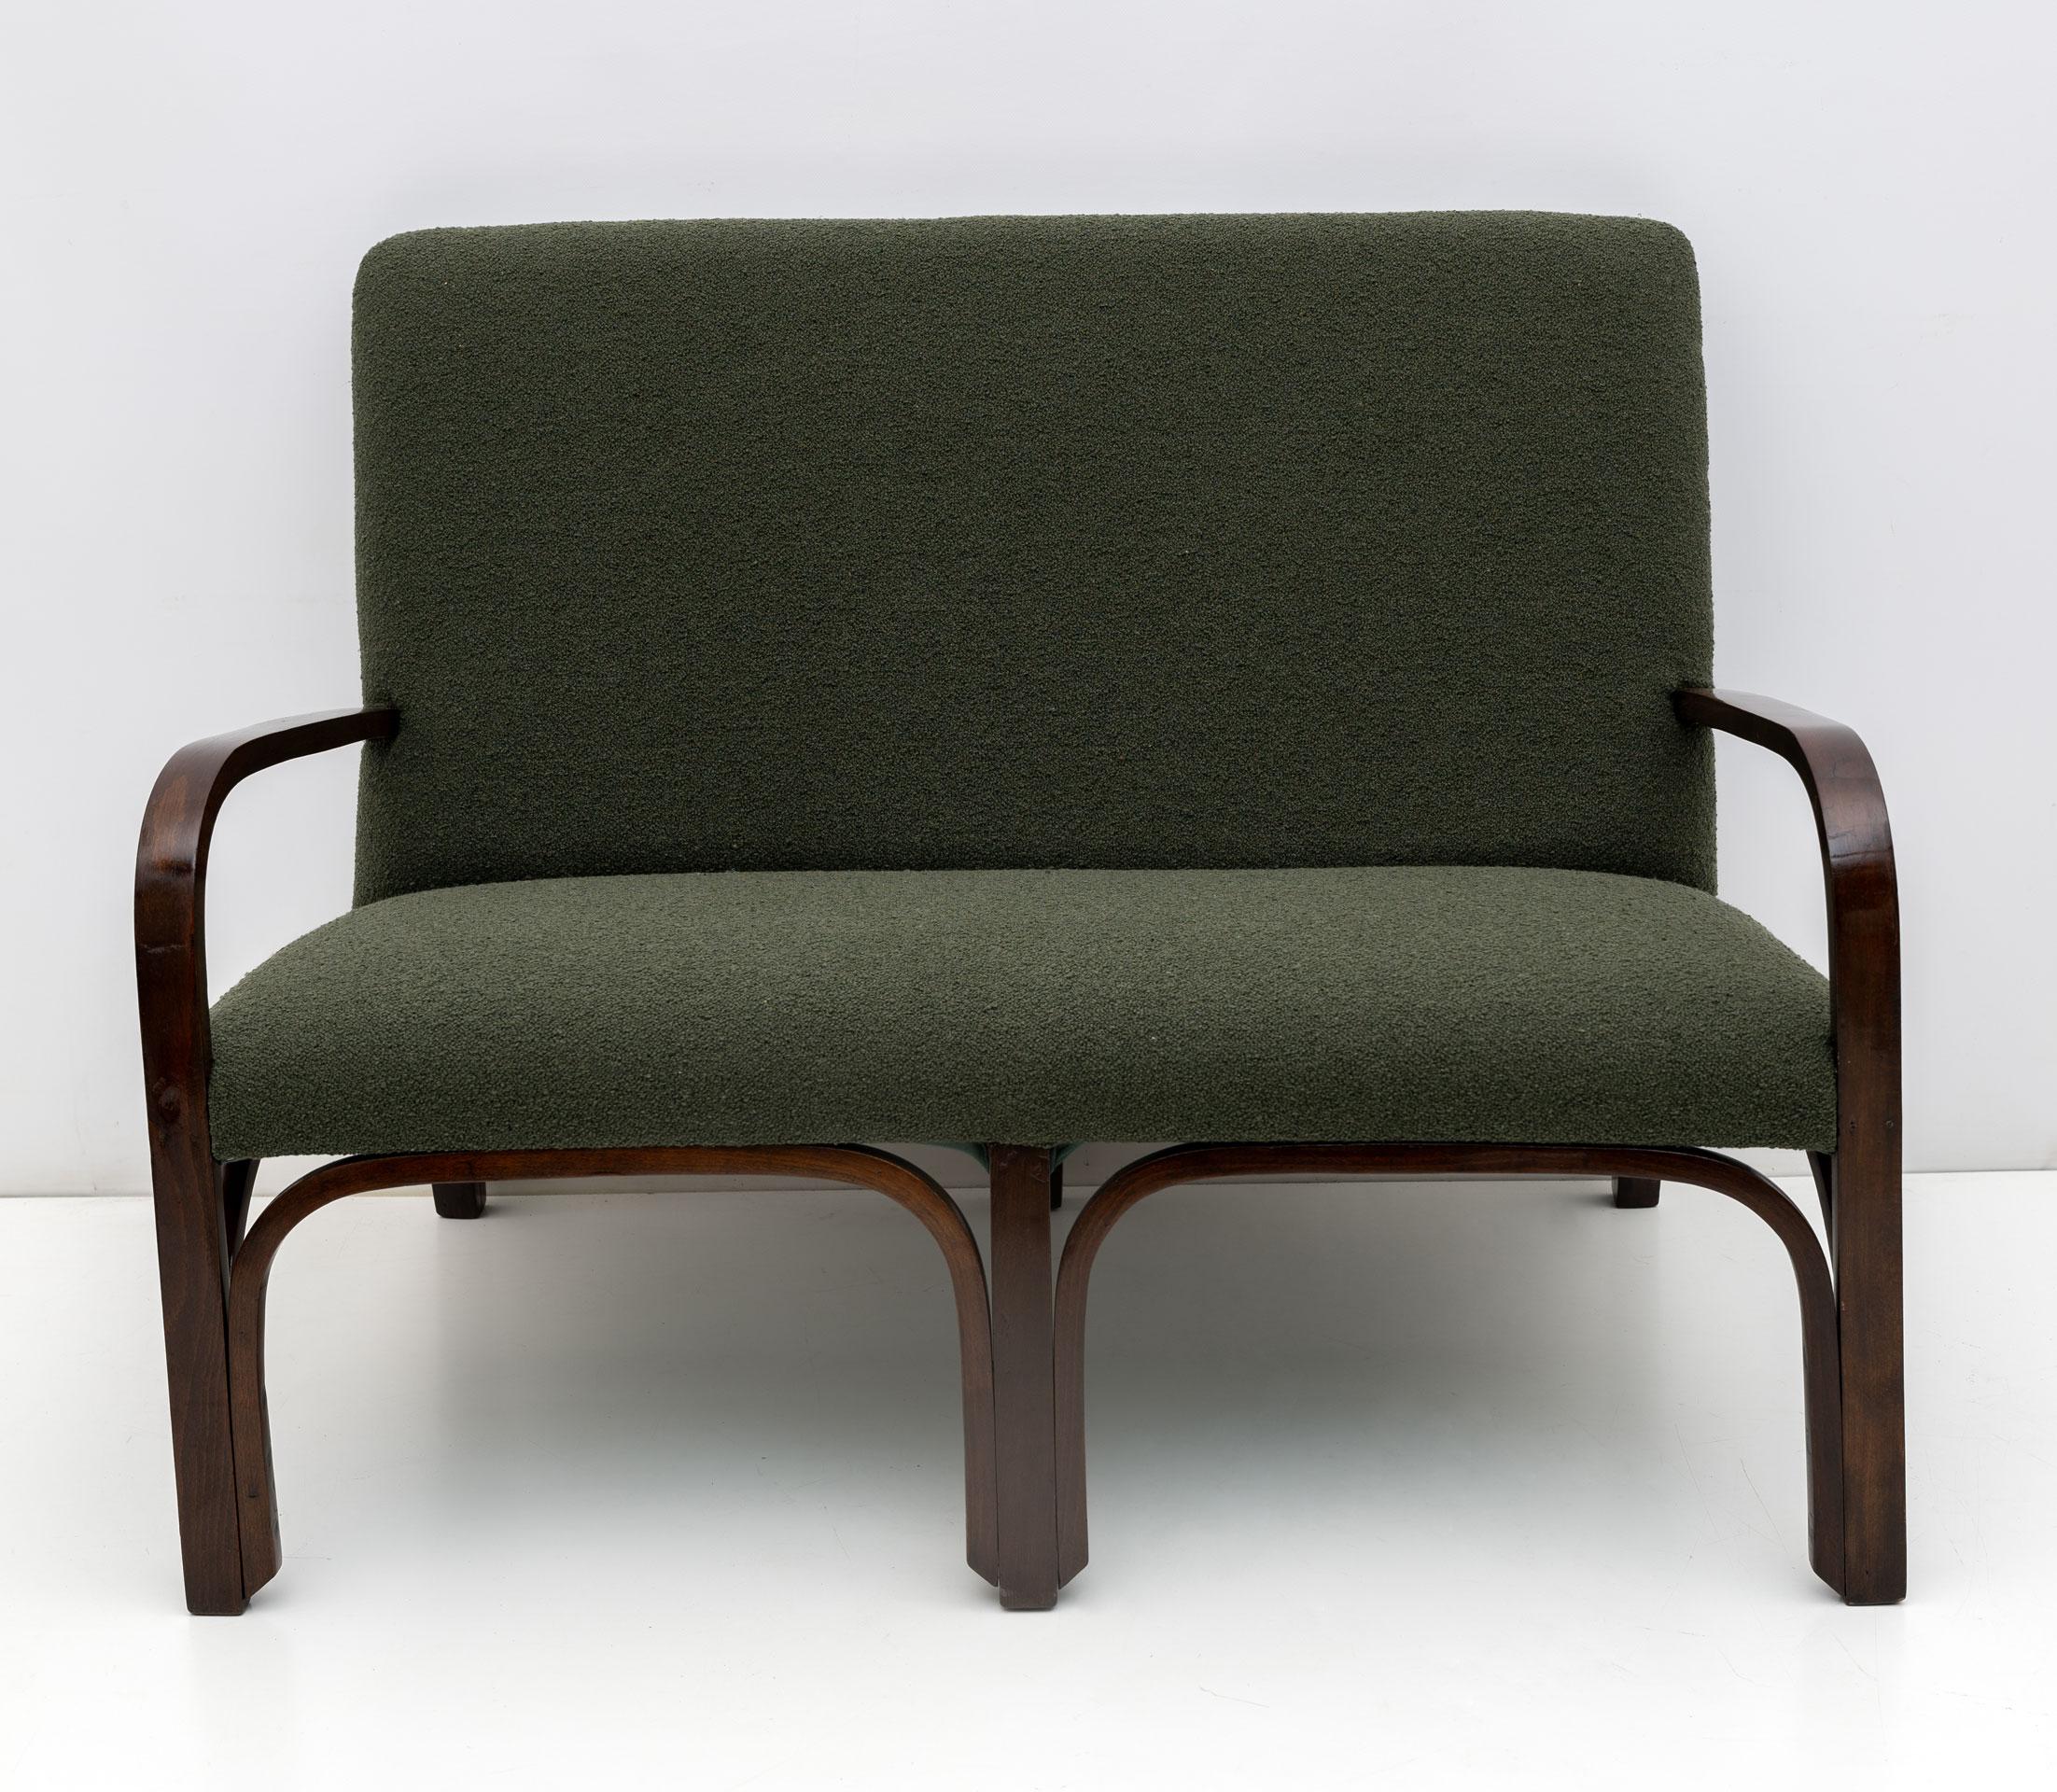 Canapé et deux fauteuils produits en Italie dans les années 1930 dans le style Art déco. L'ensemble a été entièrement restauré et recouvert de bouclettes vertes. Prêt à meubler votre maison.
Les fauteuils mesurent cm :
W55 x D74 x H82